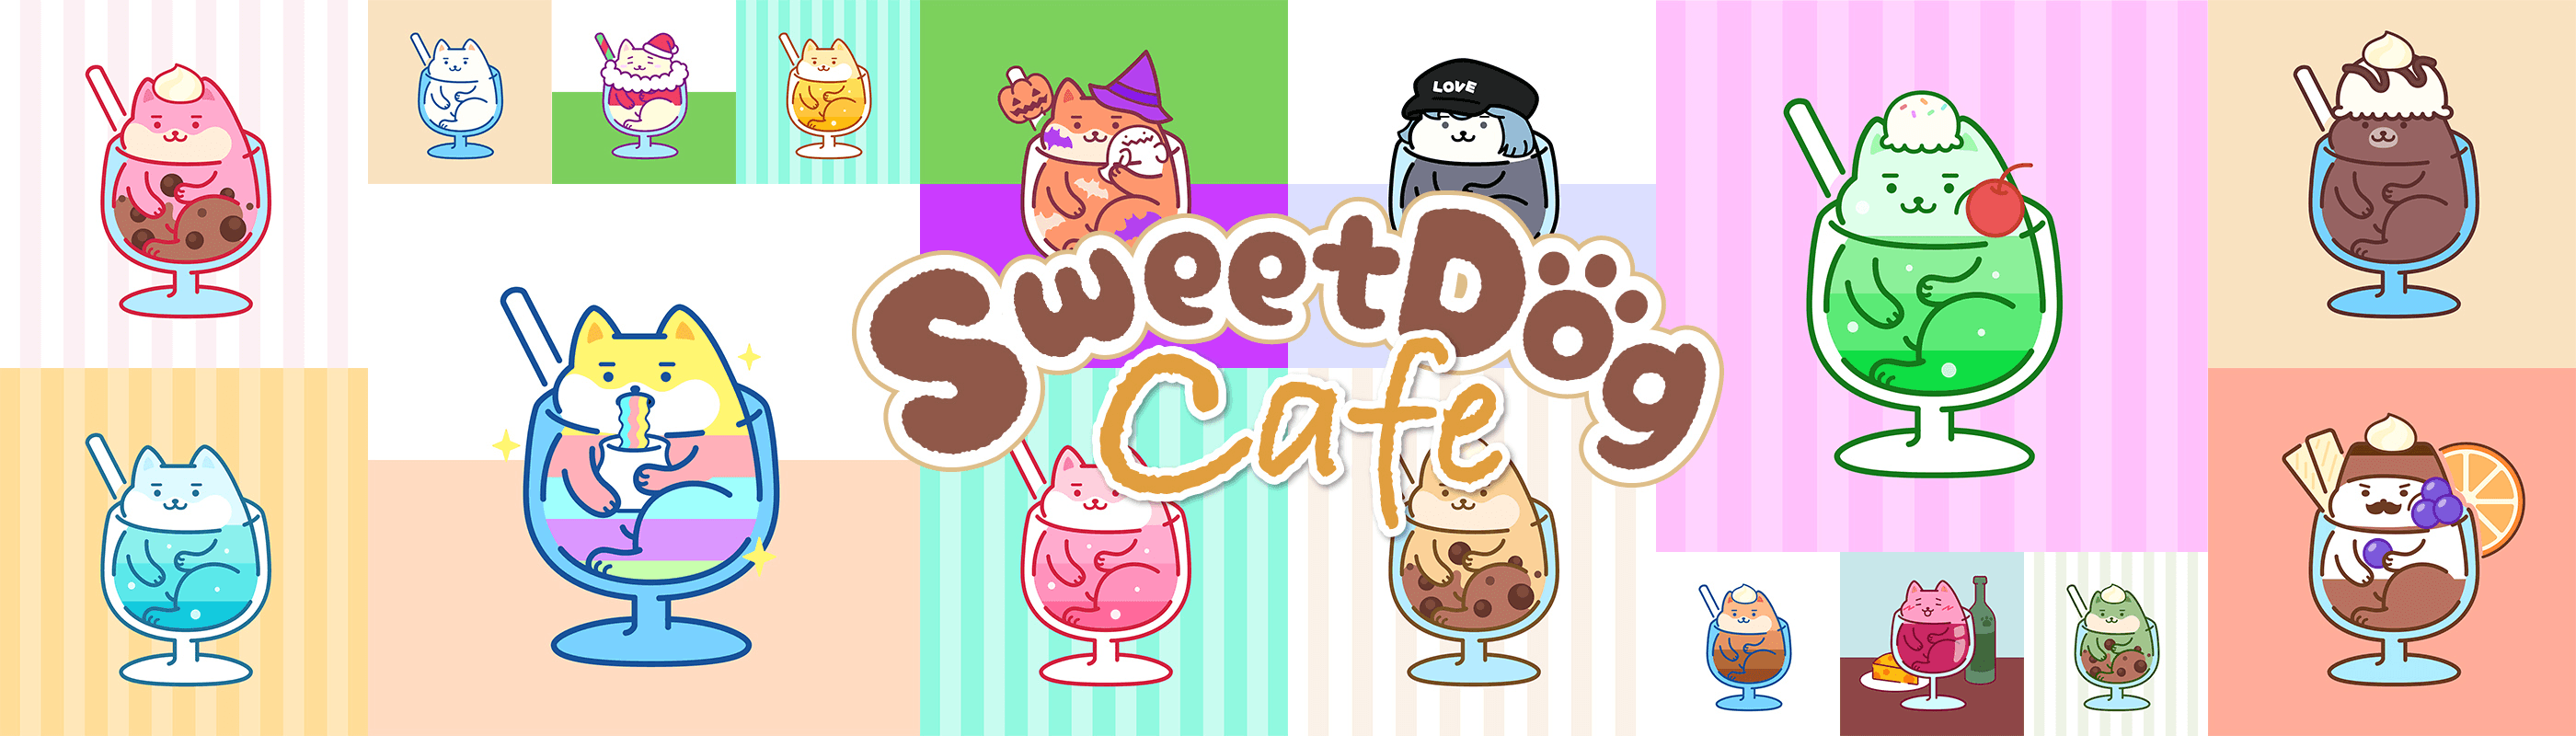 SweetDogCafe